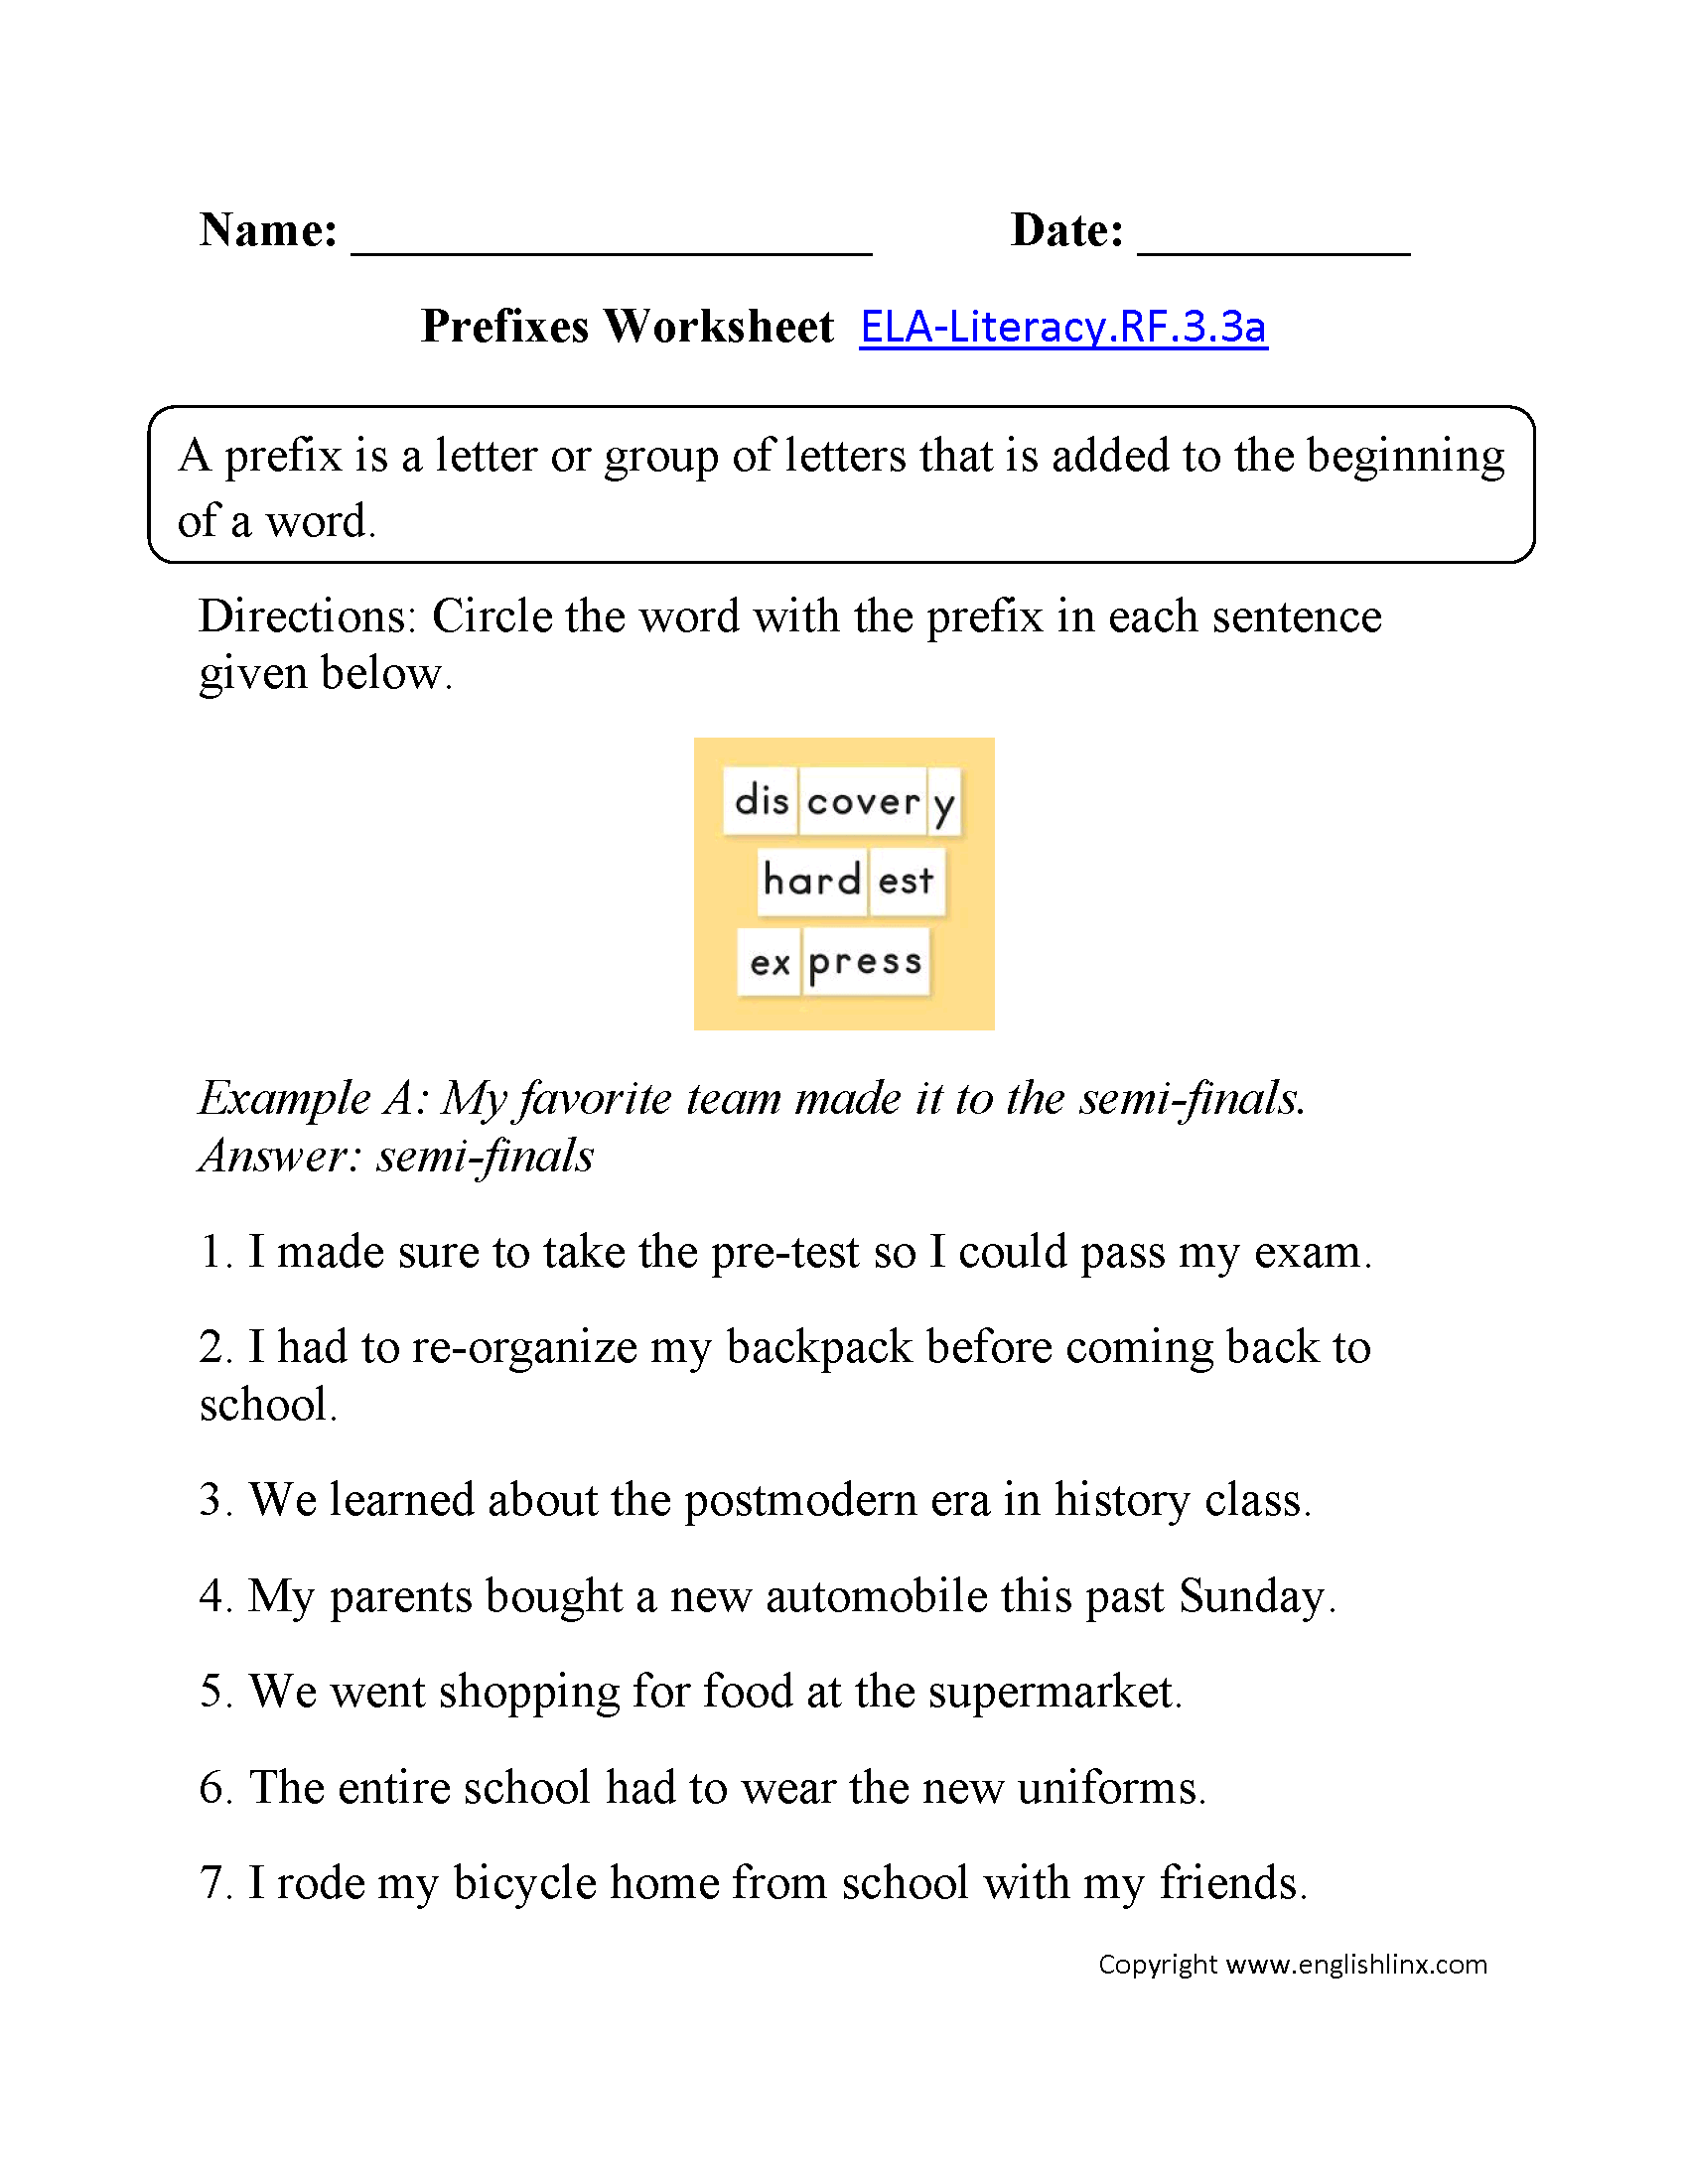 Prefixes Worksheet 1 ELA-Literacy.RF.3.3a Reading Foundational Skills